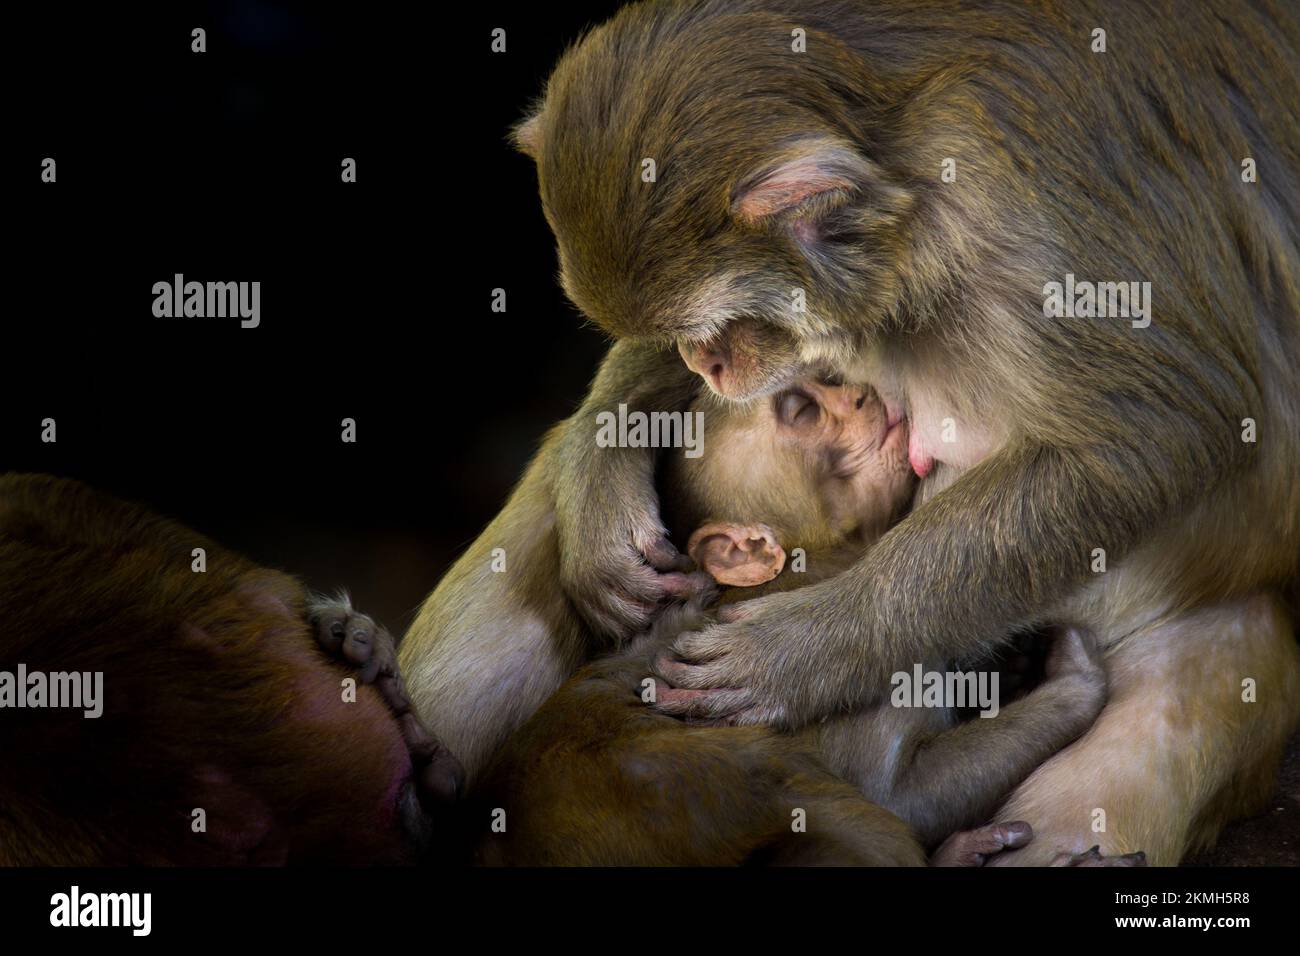 Porträt eines kleinen Rhesus-Macaque-Affen in ihren Mutterarmen, das Muttermilch trinkt, so süß und bezaubernd. Stockfoto